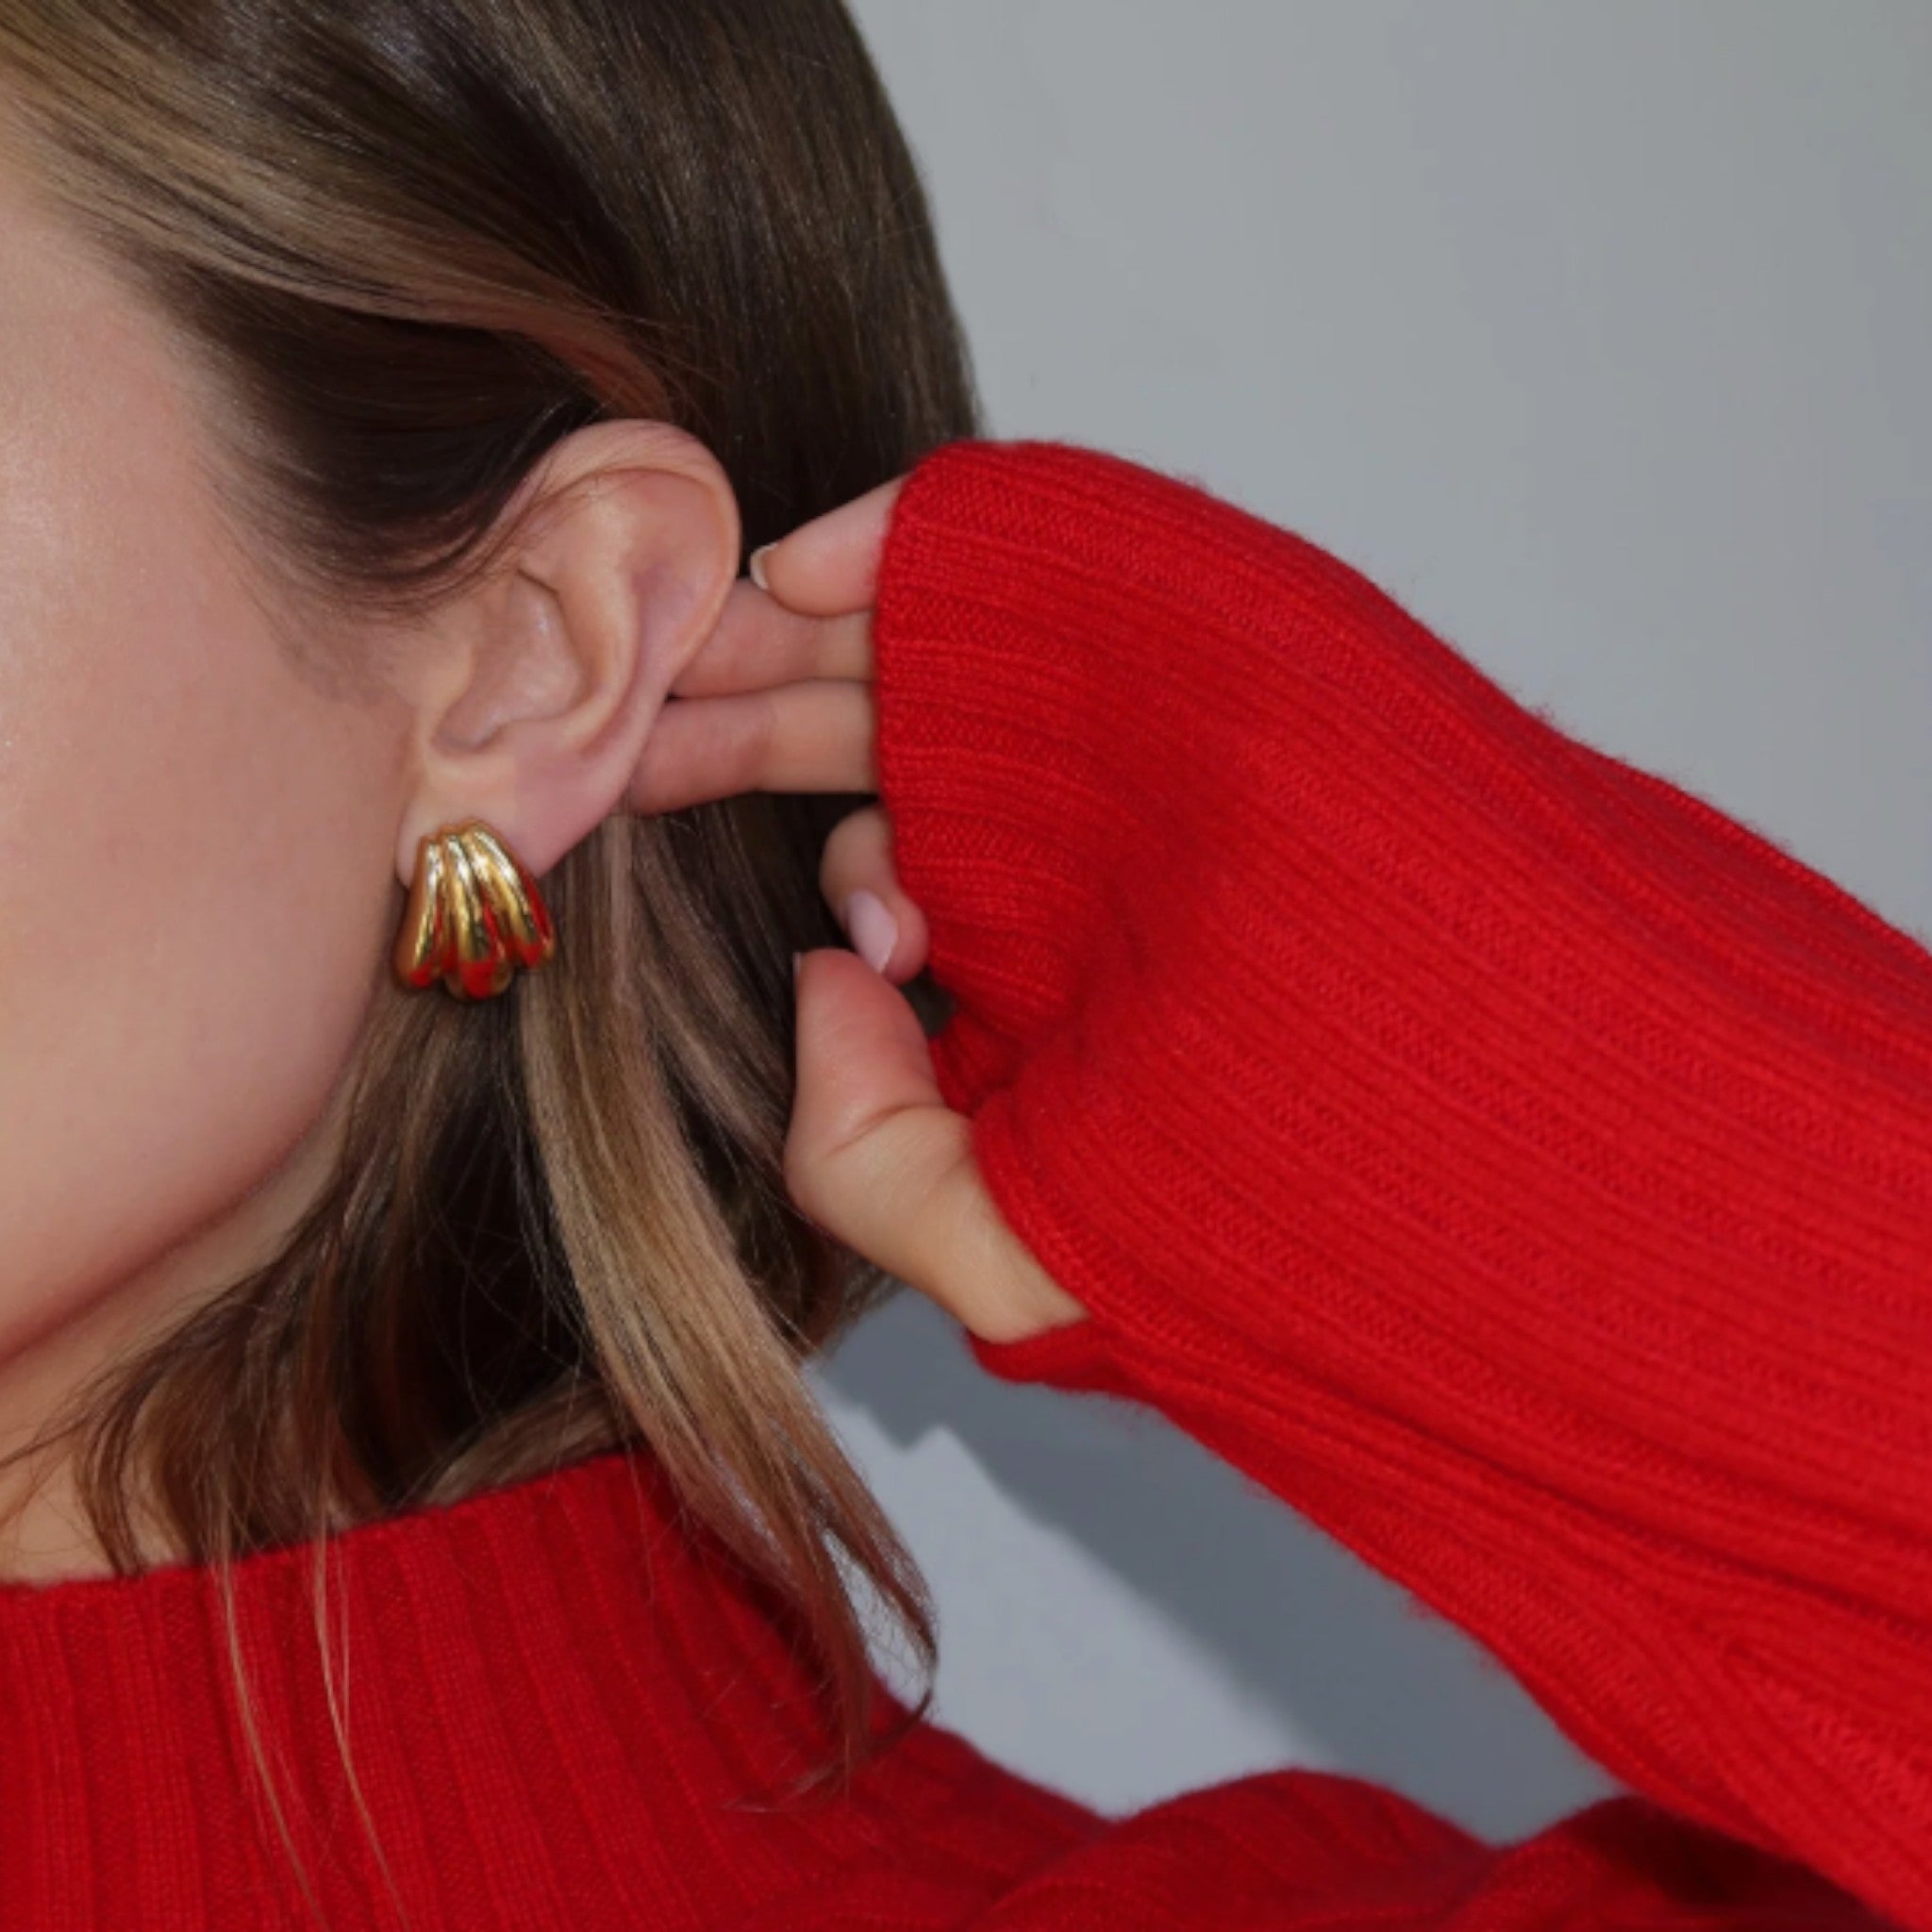 Mod + Jo - Gemma Statement Earrings - Gold Plate